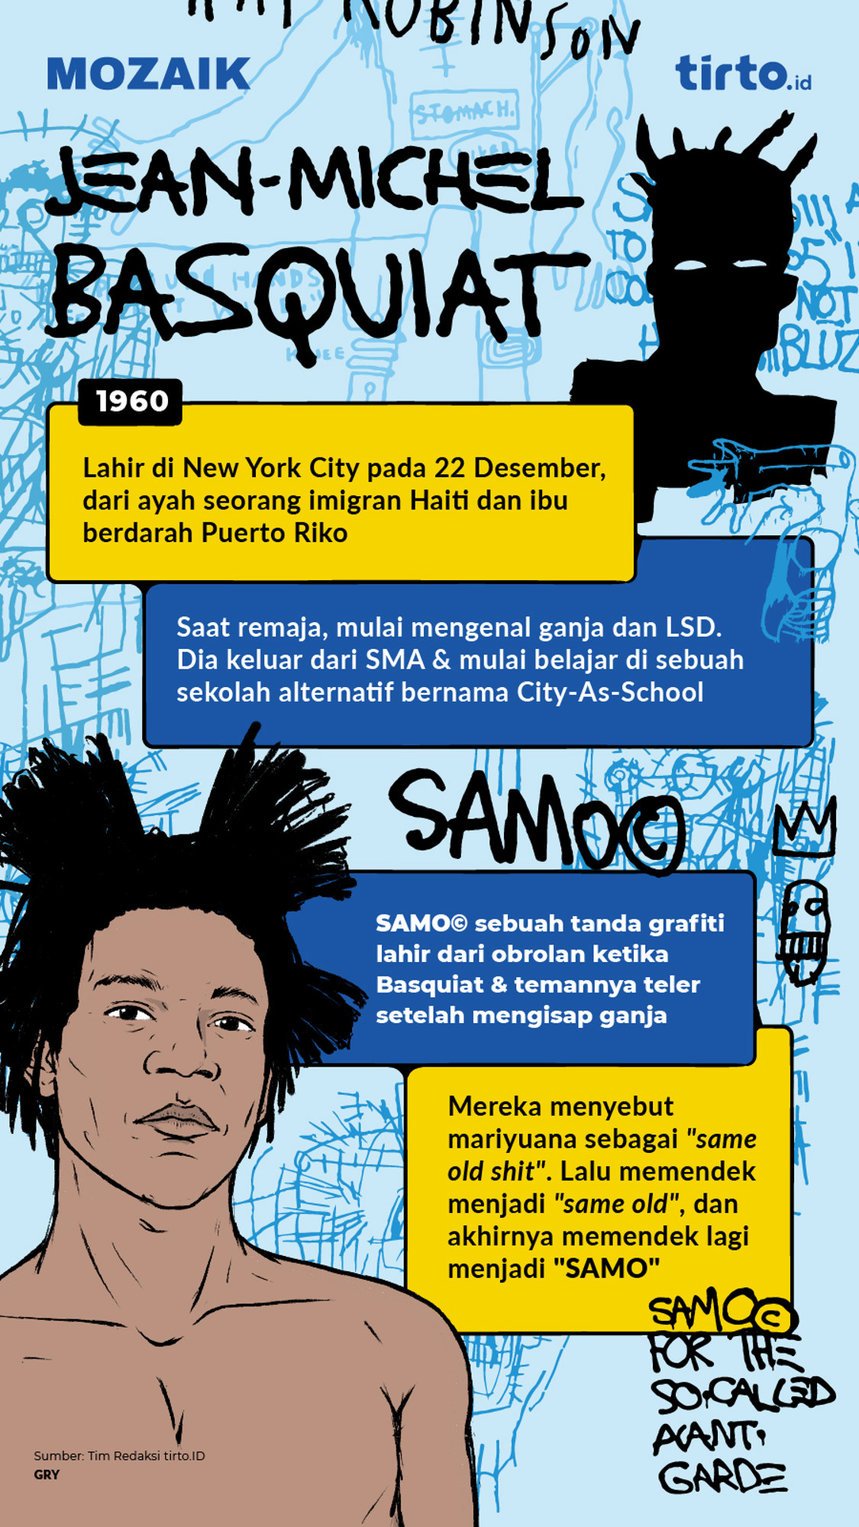 Infografik Mozaik Jean Michel Basquiat